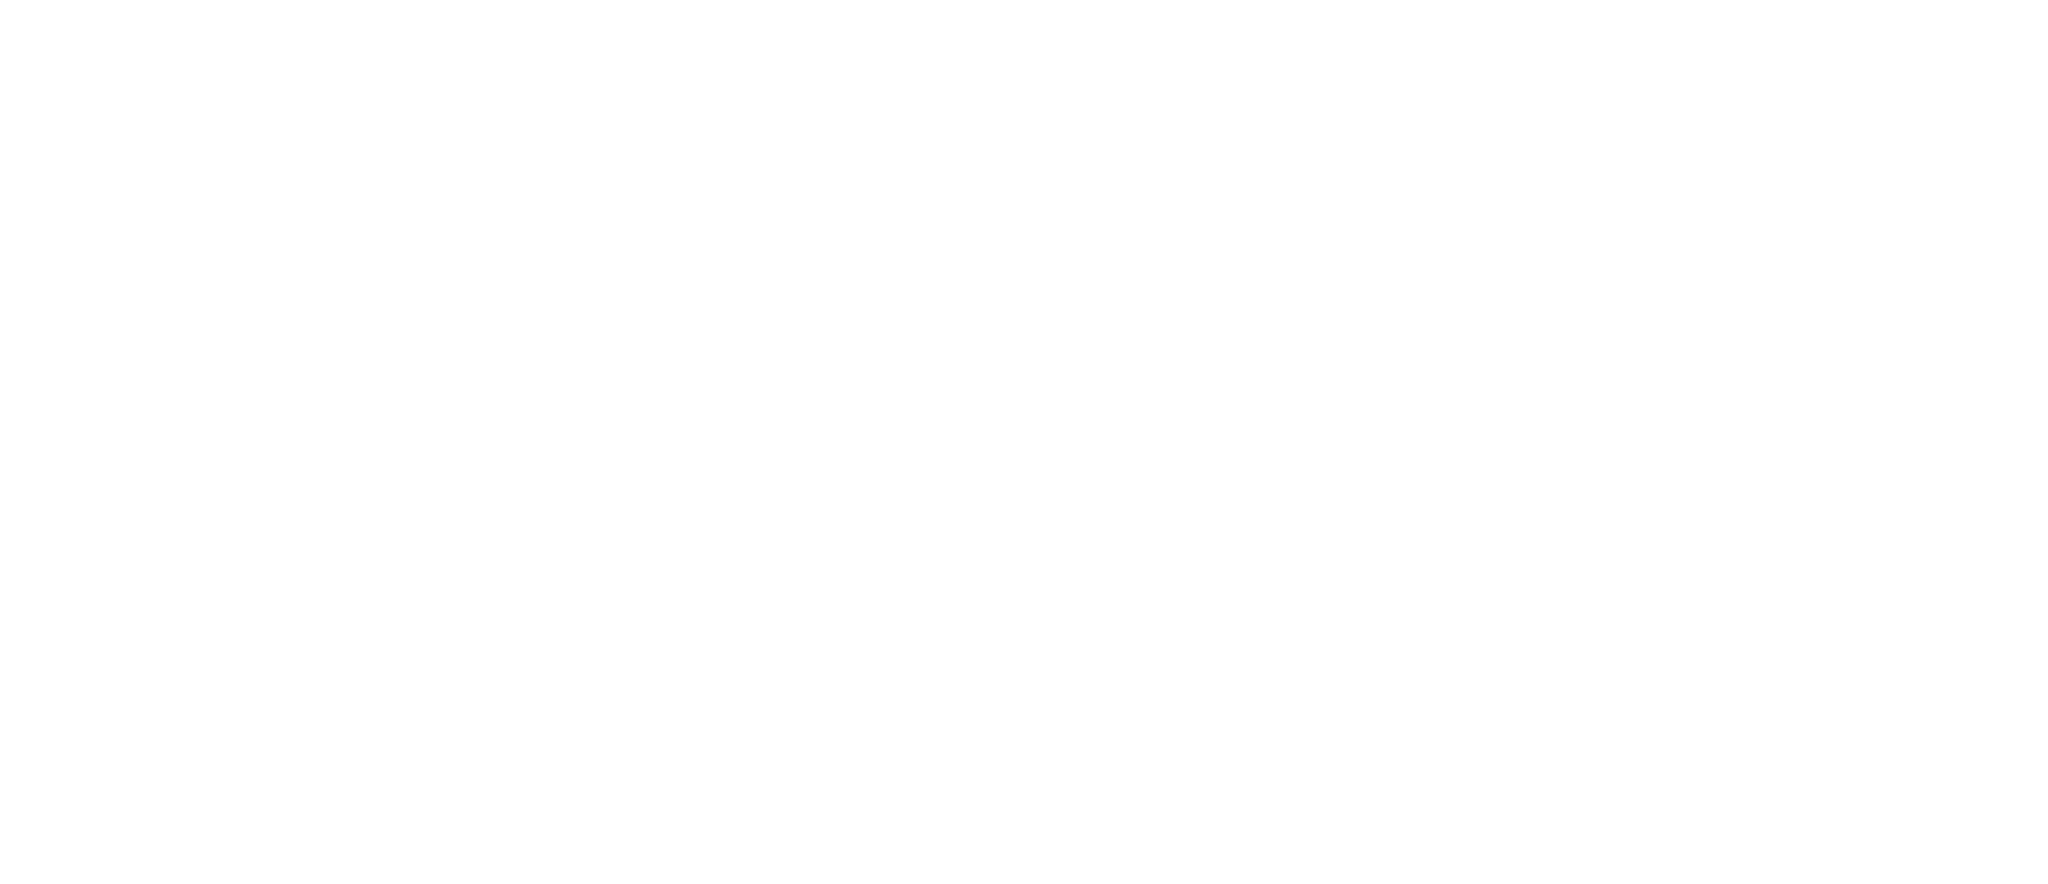 Avam Solutions